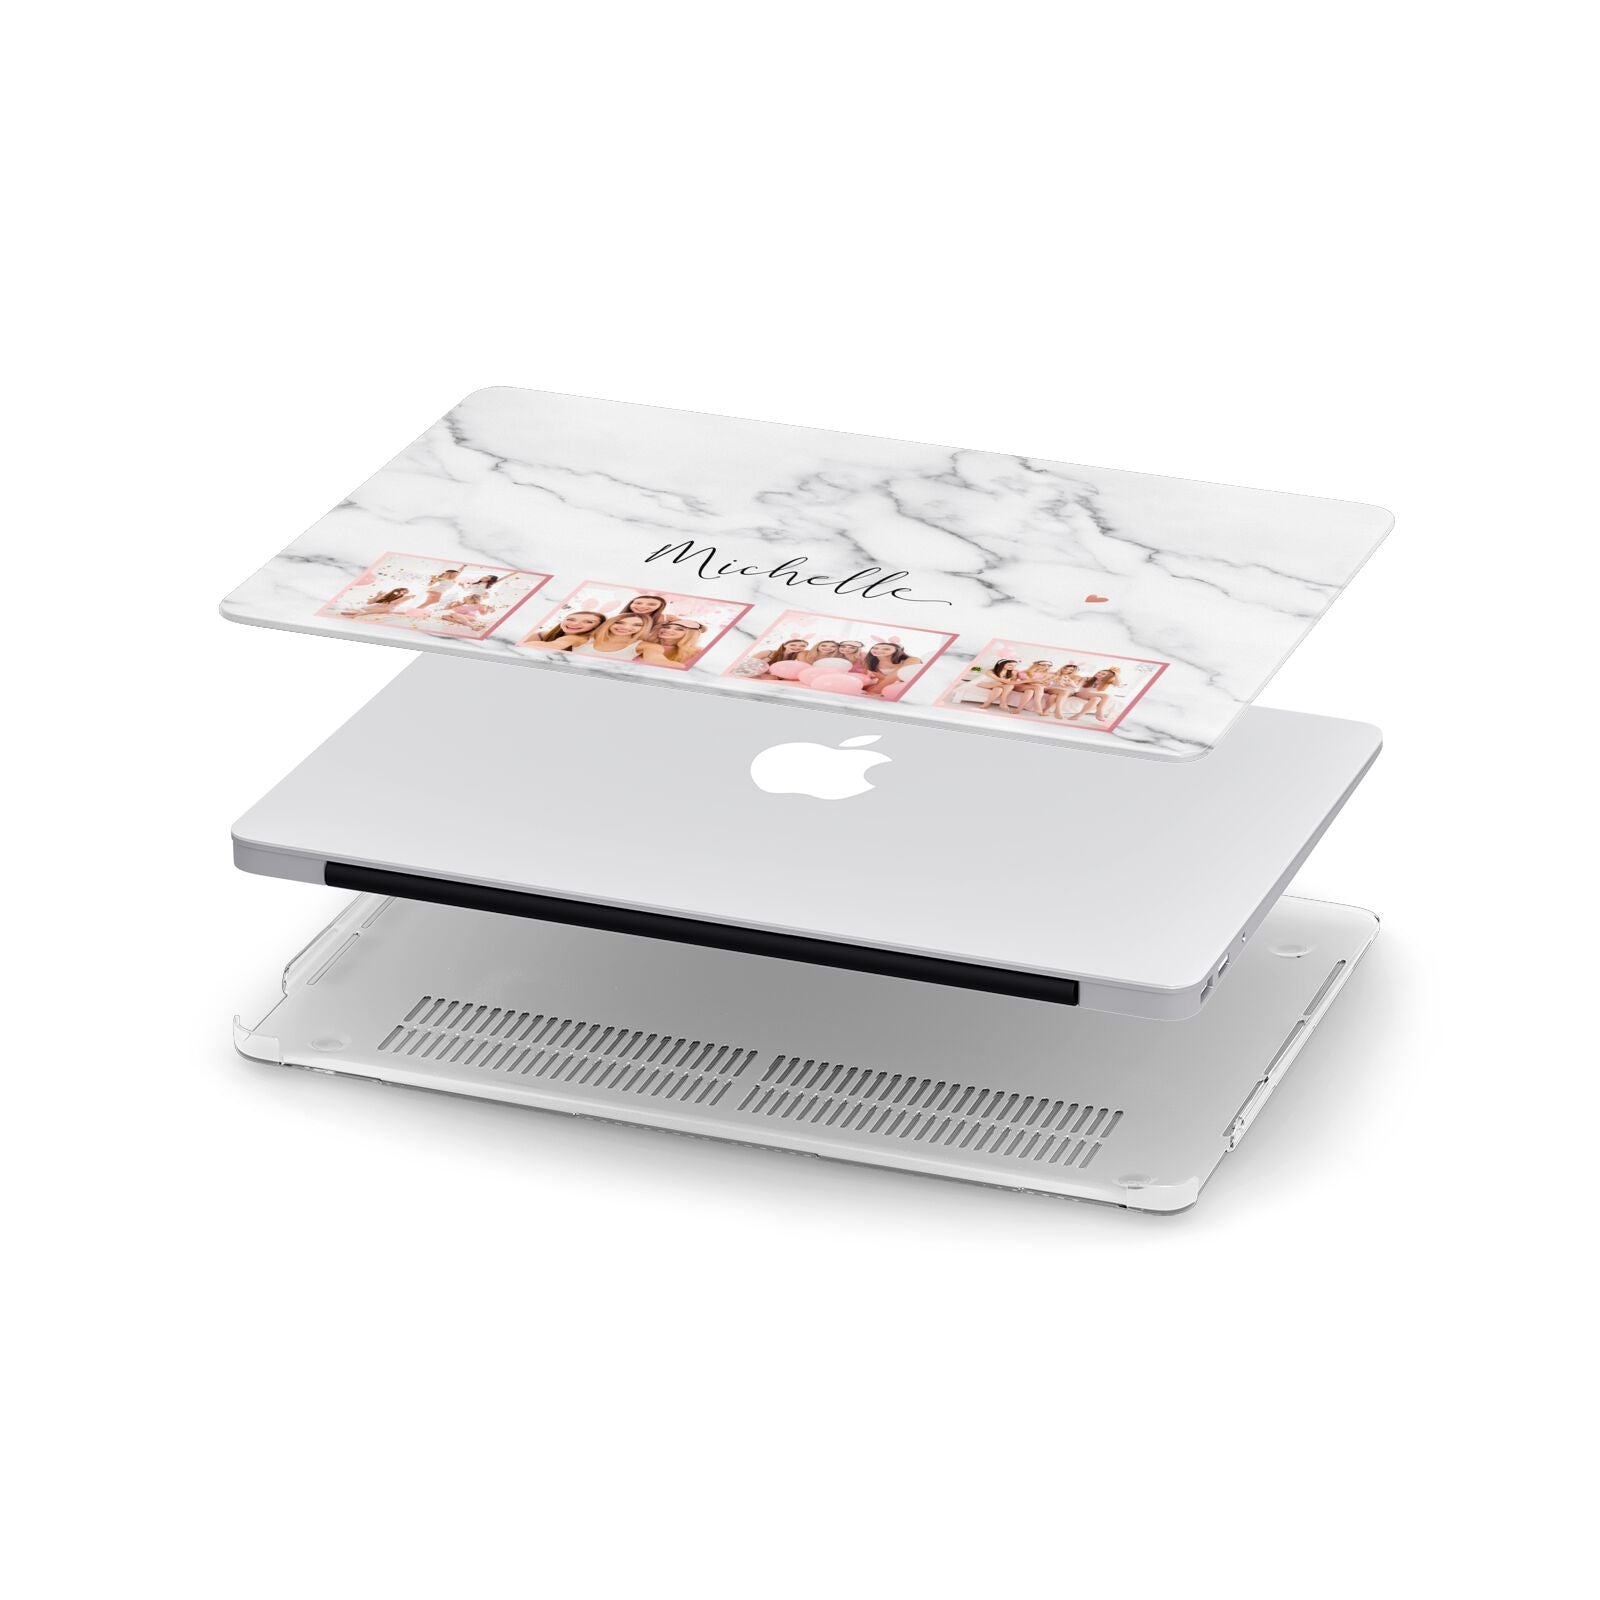 Marble Photo Strip Personalised Apple MacBook Case in Detail